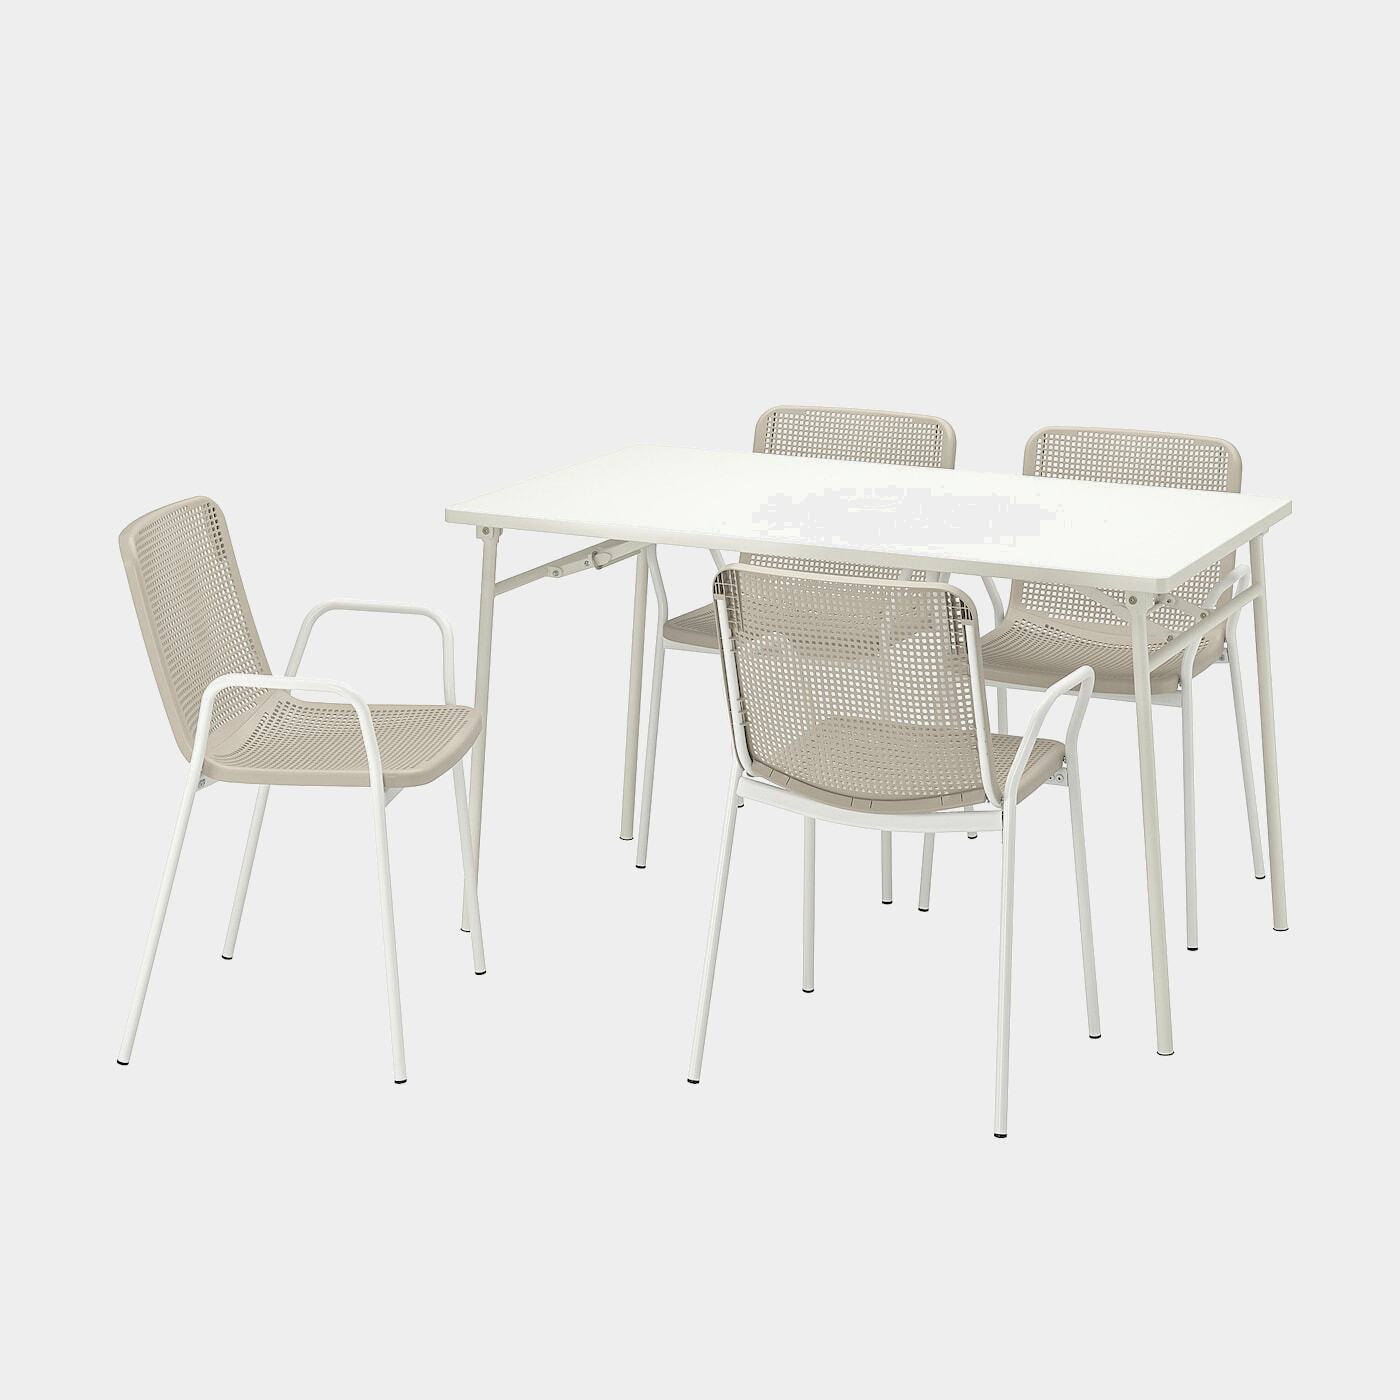 TORPARÖ Tisch+4 Armlehnstühle/außen  -  - Möbel Ideen für dein Zuhause von Home Trends. Möbel Trends von Social Media Influencer für dein Skandi Zuhause.